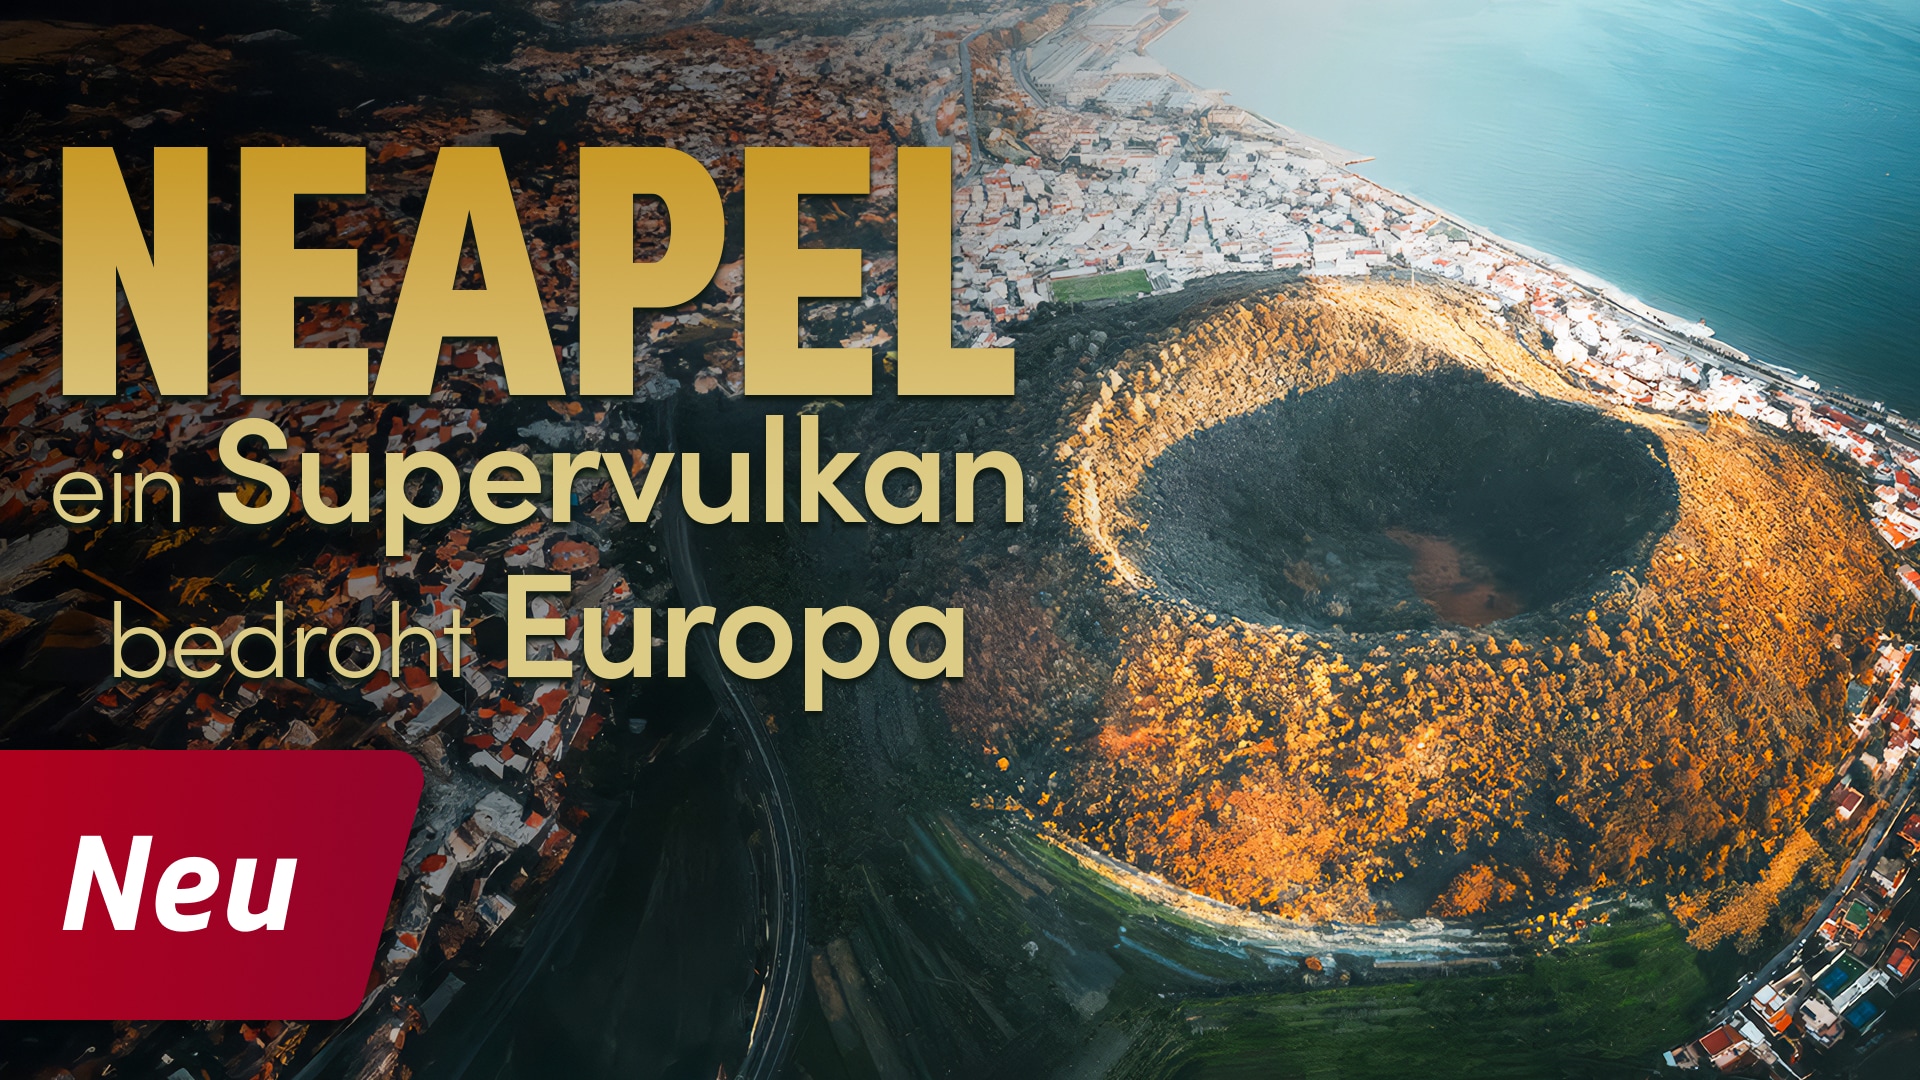 Neapel, ein Supervulkan bedroht Europa